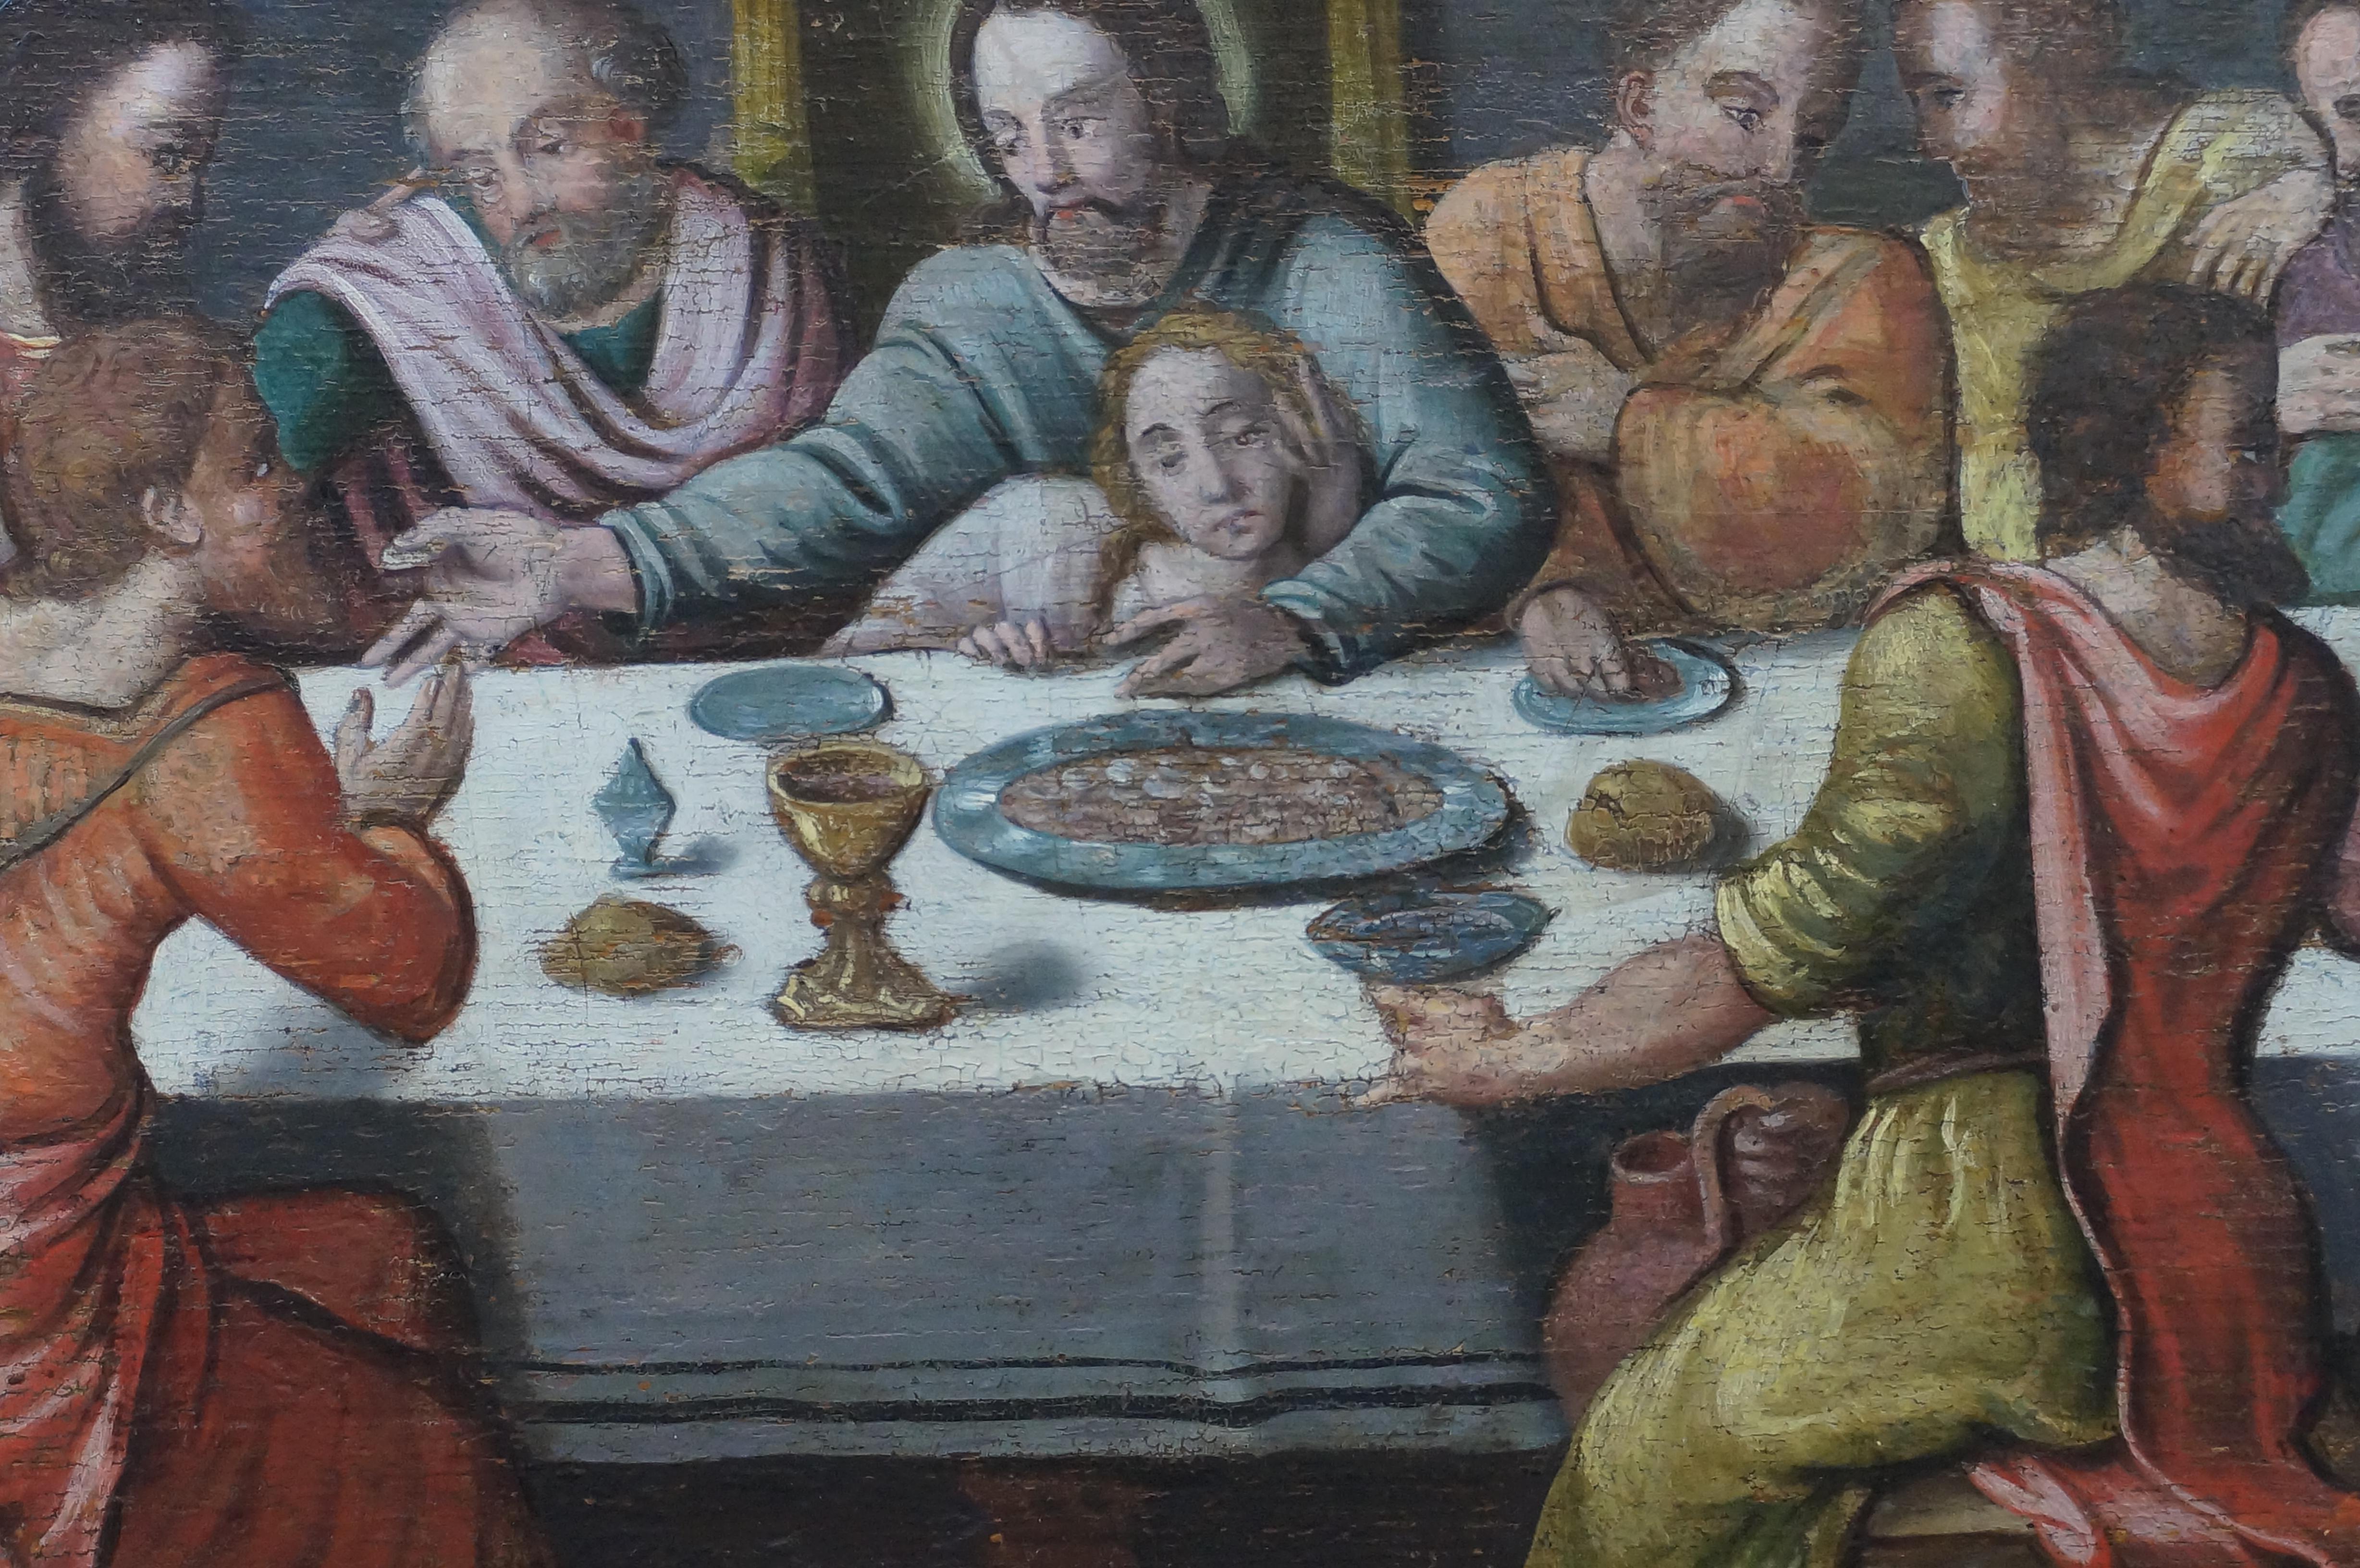 Anrique oil painting, Last Supper, German school, Renaissance, Late 16th c. 1